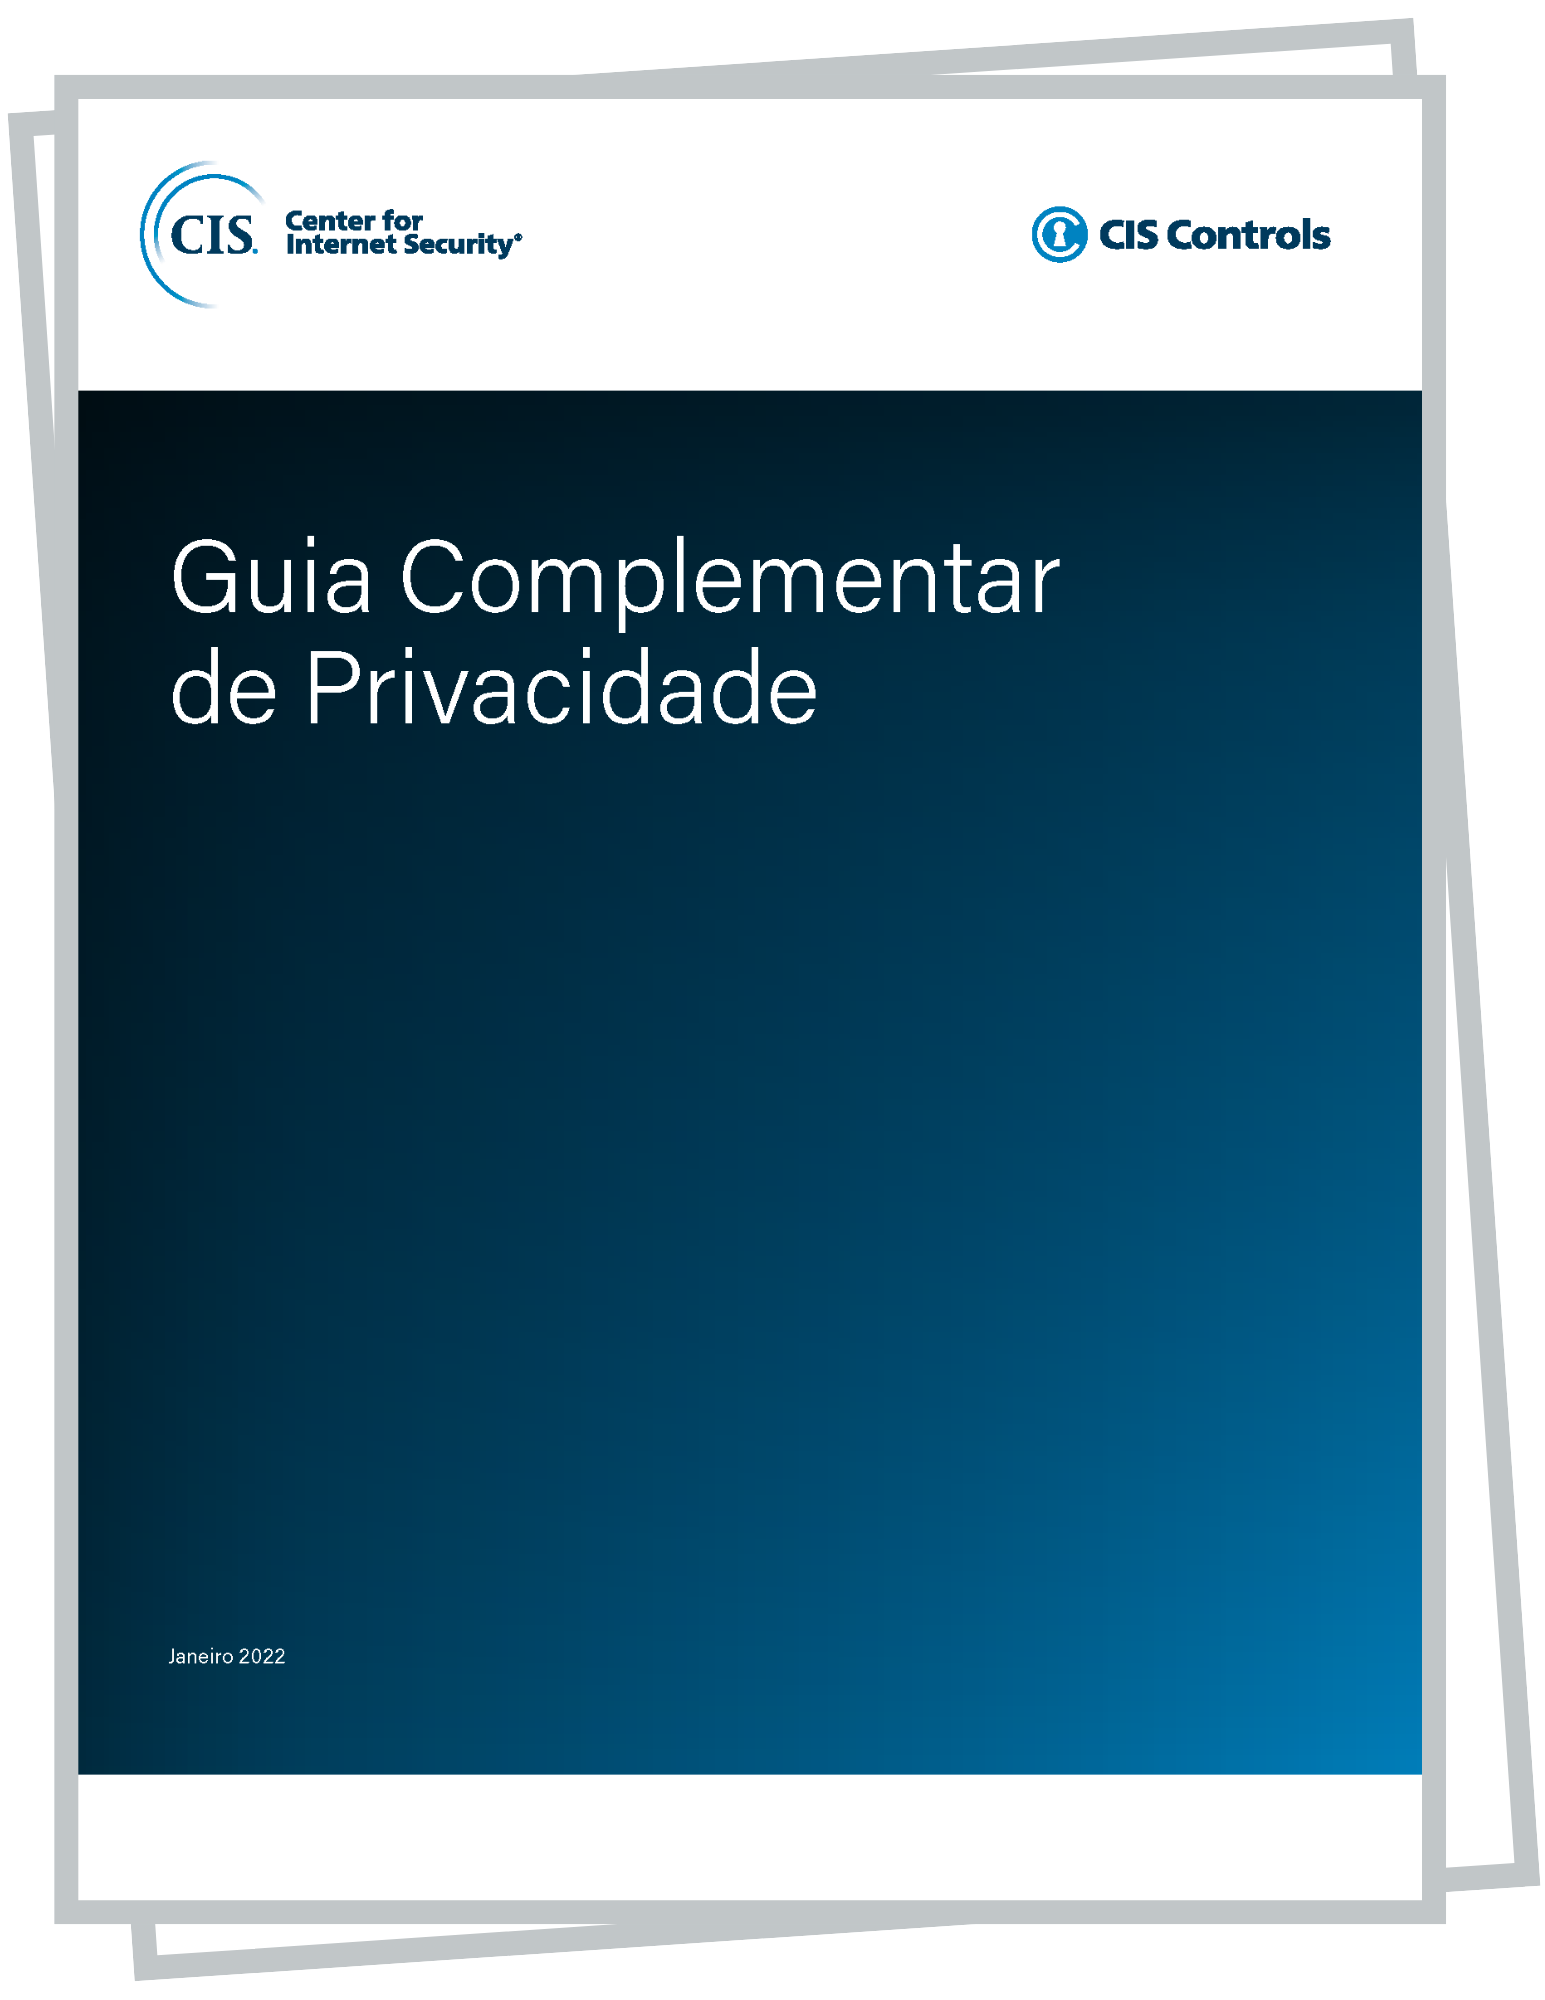 CIS Controls v8 Privacy Companion Guide (Portuguese Translation)